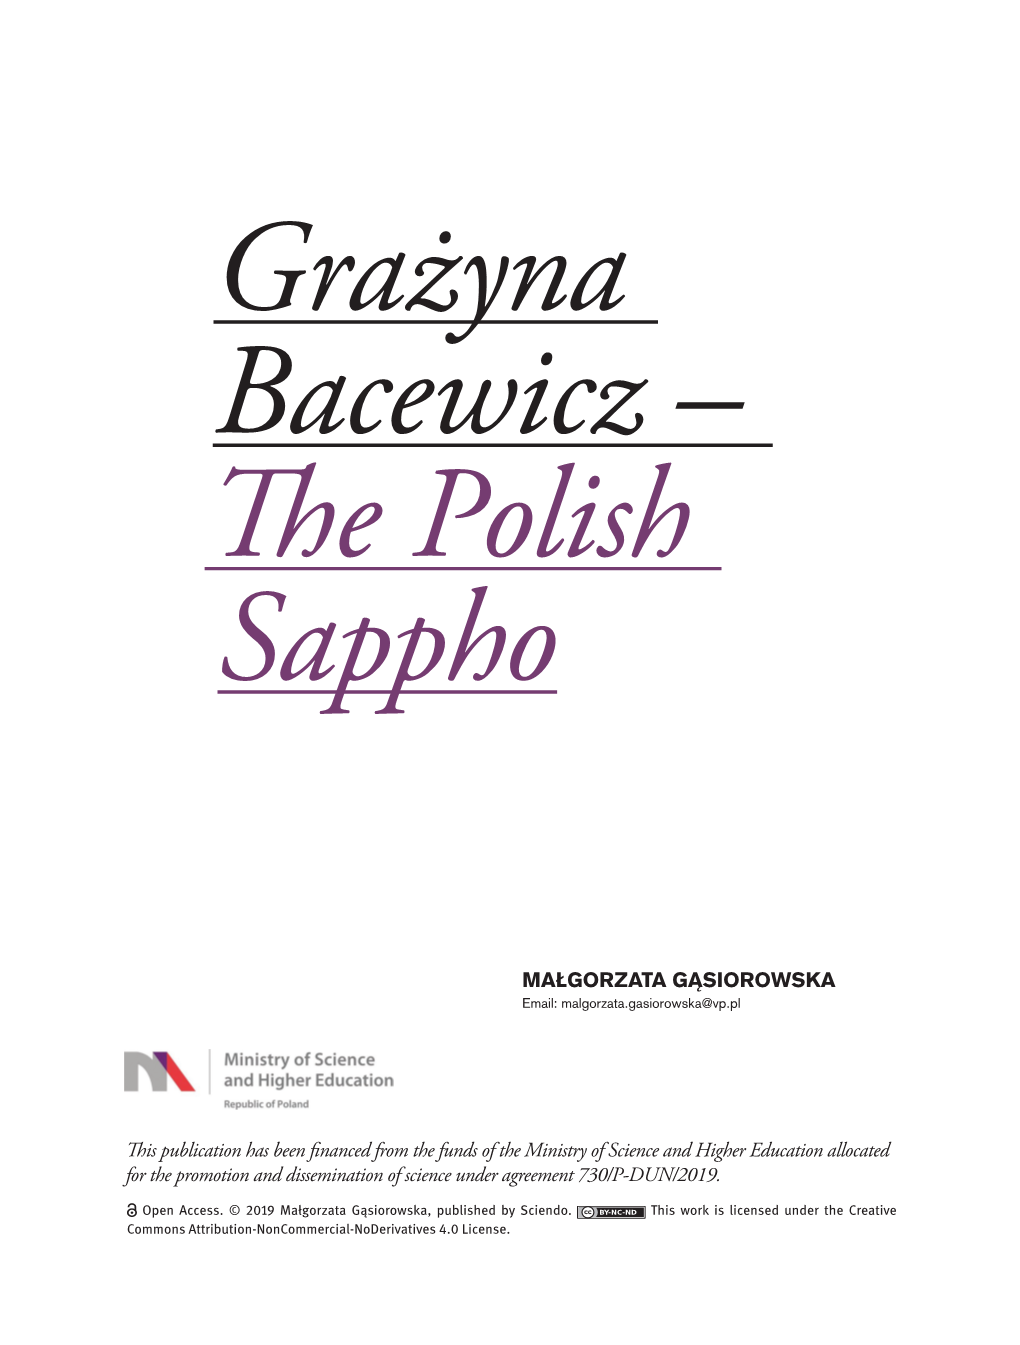 Grażyna Bacewicz – the Polish Sappho